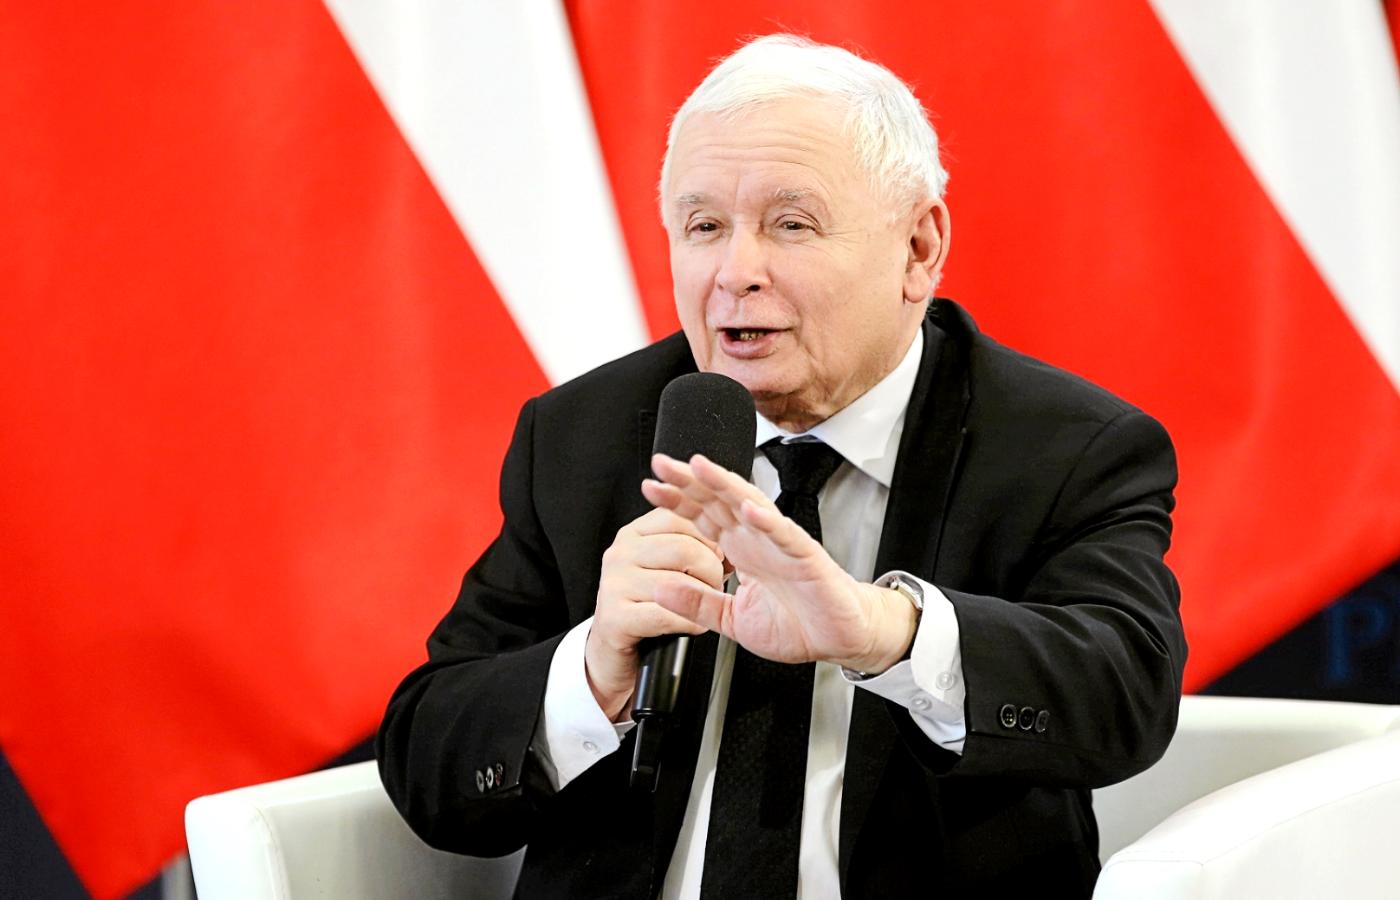 Prezes PiS Jarosław Kaczyński w Szczecinie